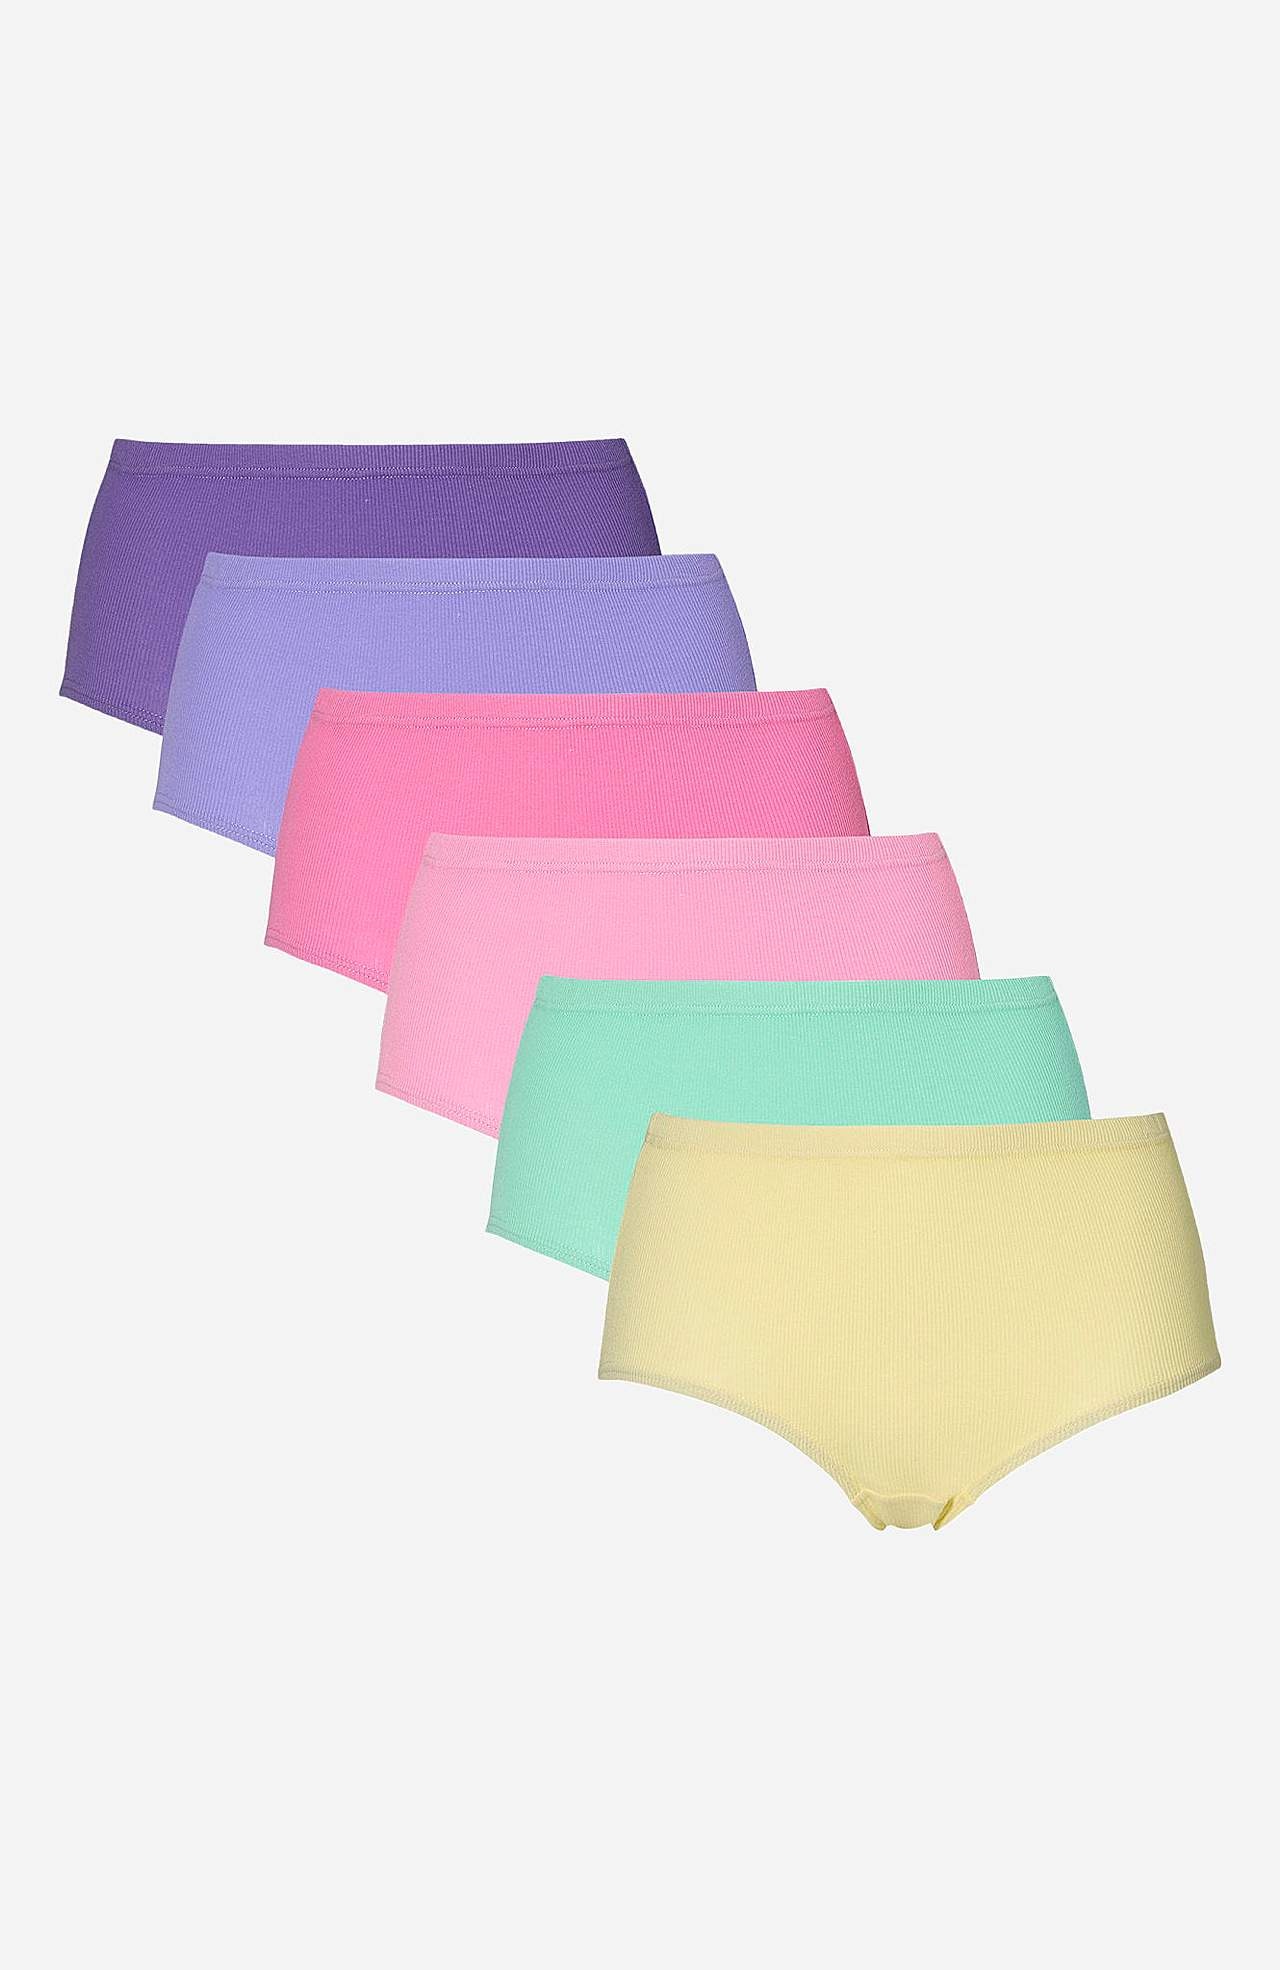 Damen-Unterhose Lisa 6er-Pack